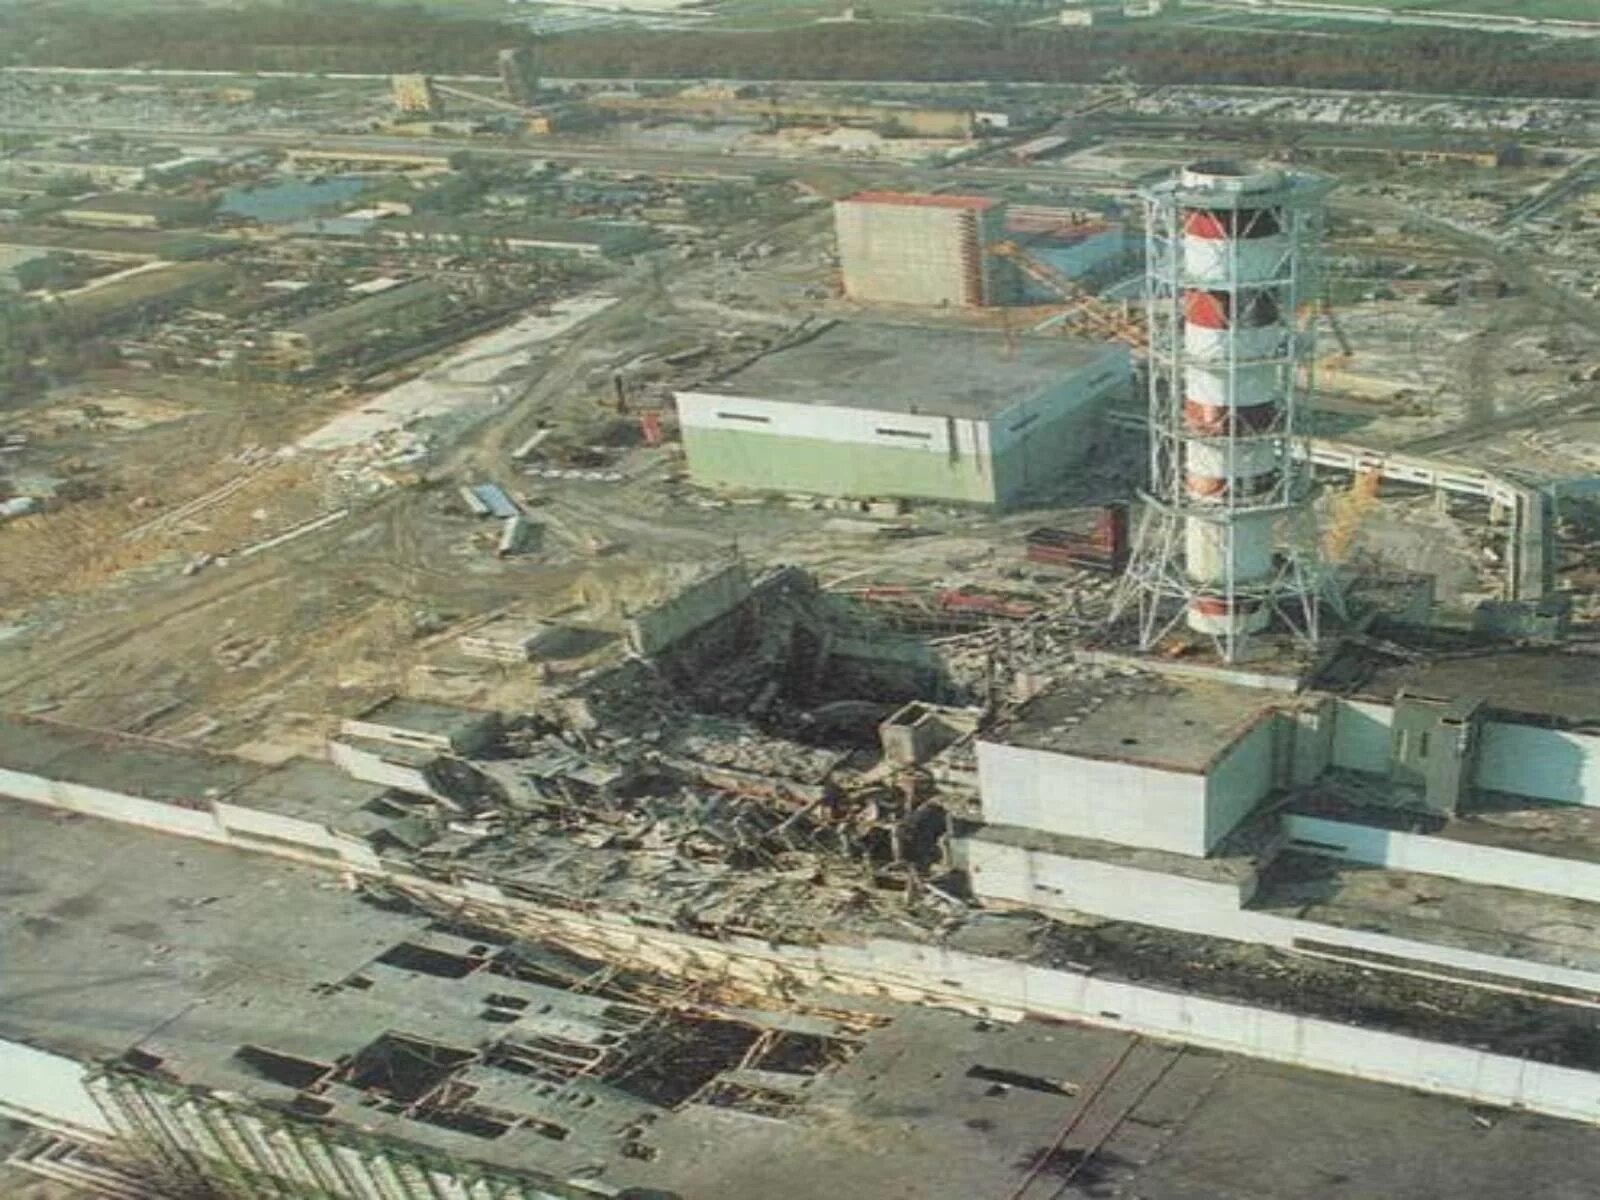 Чернобыль ЧАЭС 4 энергоблок взрыв. Чернобыль 4 энергоблок 26 апреля 1986. 1986 Катастрофа на Чернобыльской АЭС. Авария на Чернобыльской атомной электростанции - 26 апреля 1986 года.